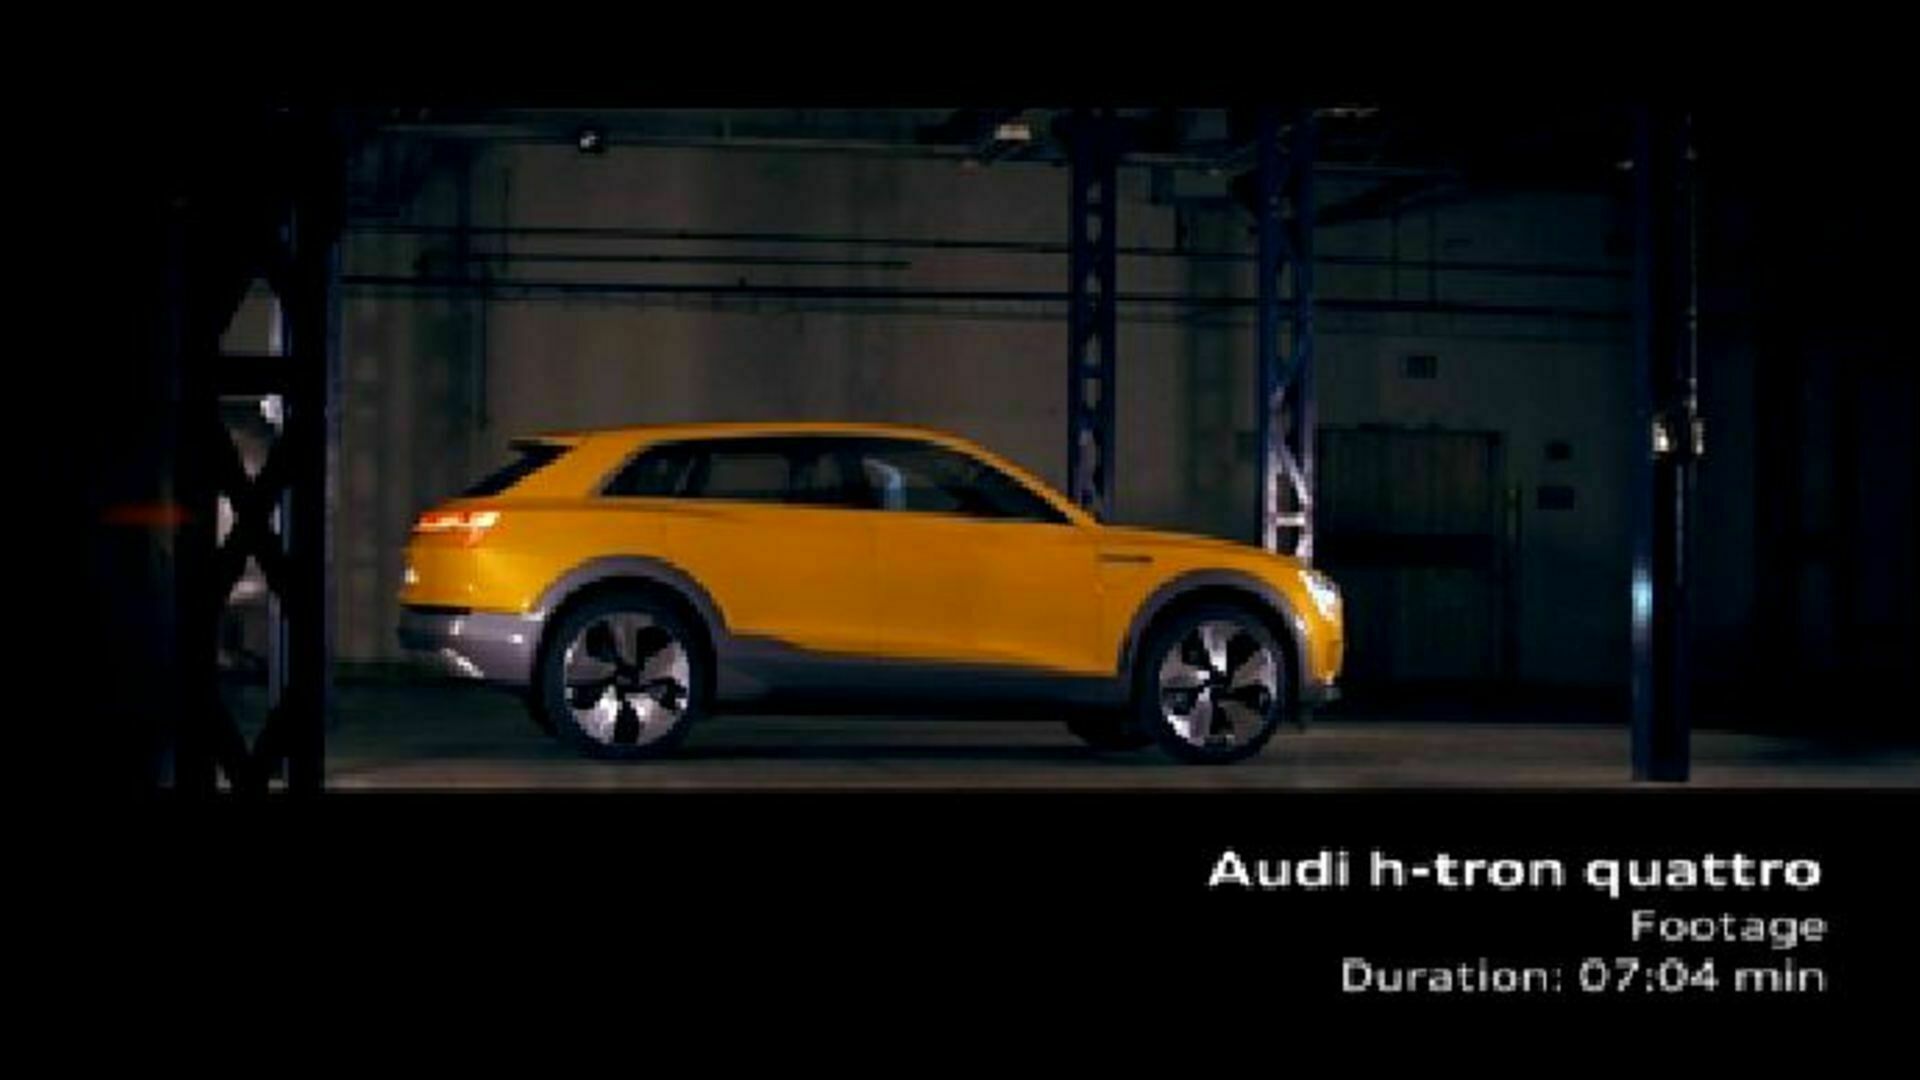 Audi h-tron quattro concept Footage 2016 AMTV EN